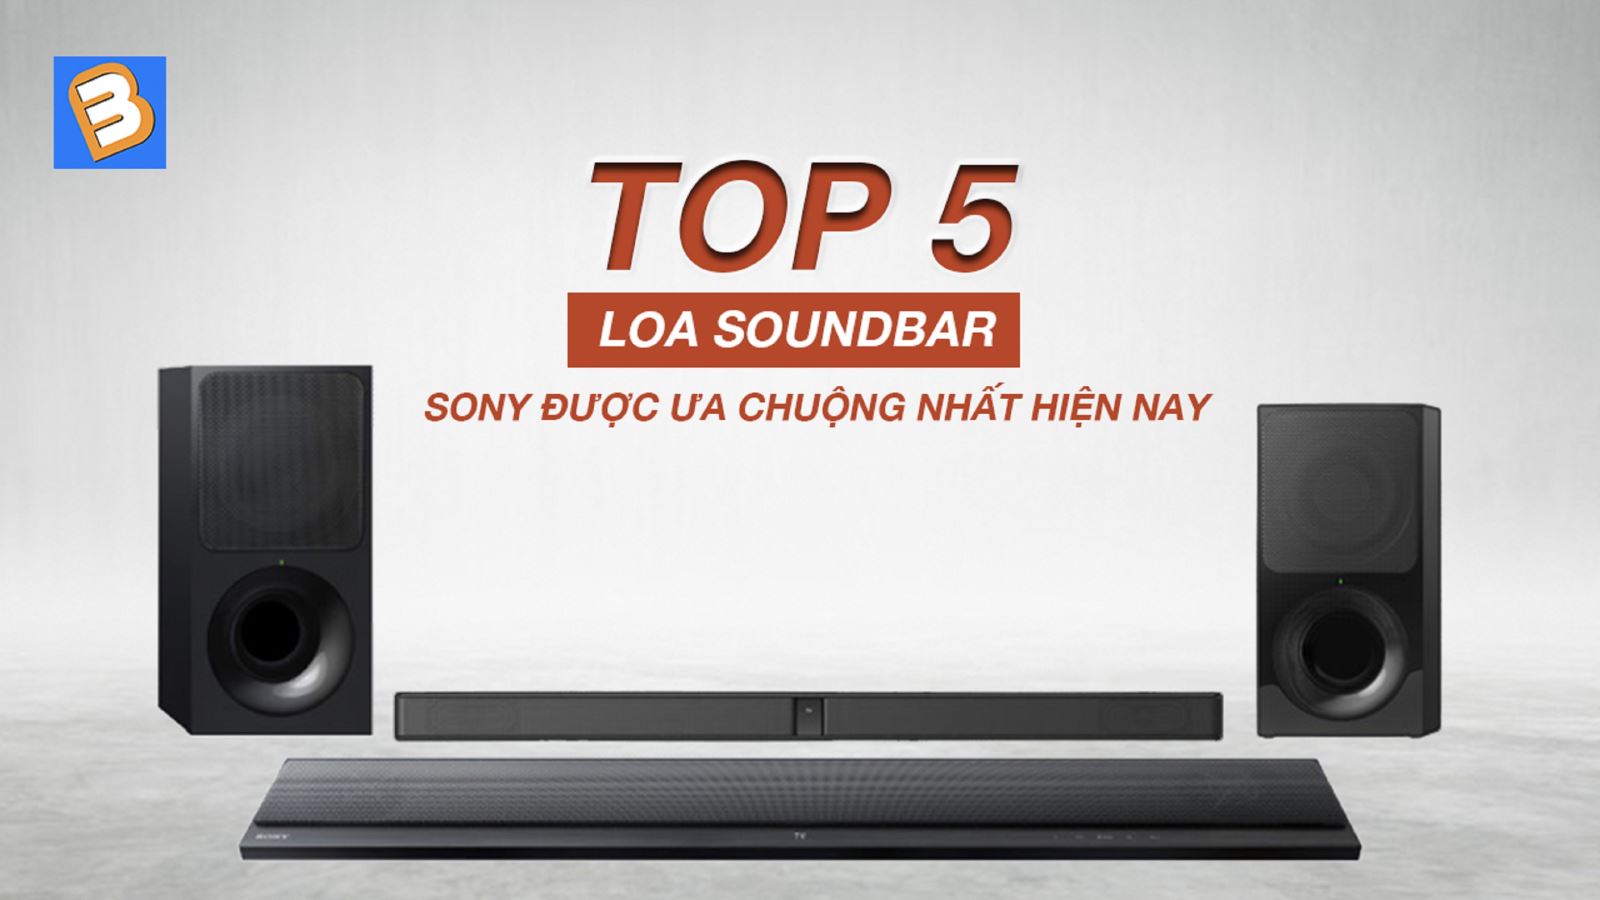 Top 5 loa soundbar Sony được ưa chuộng nhất hiện nay